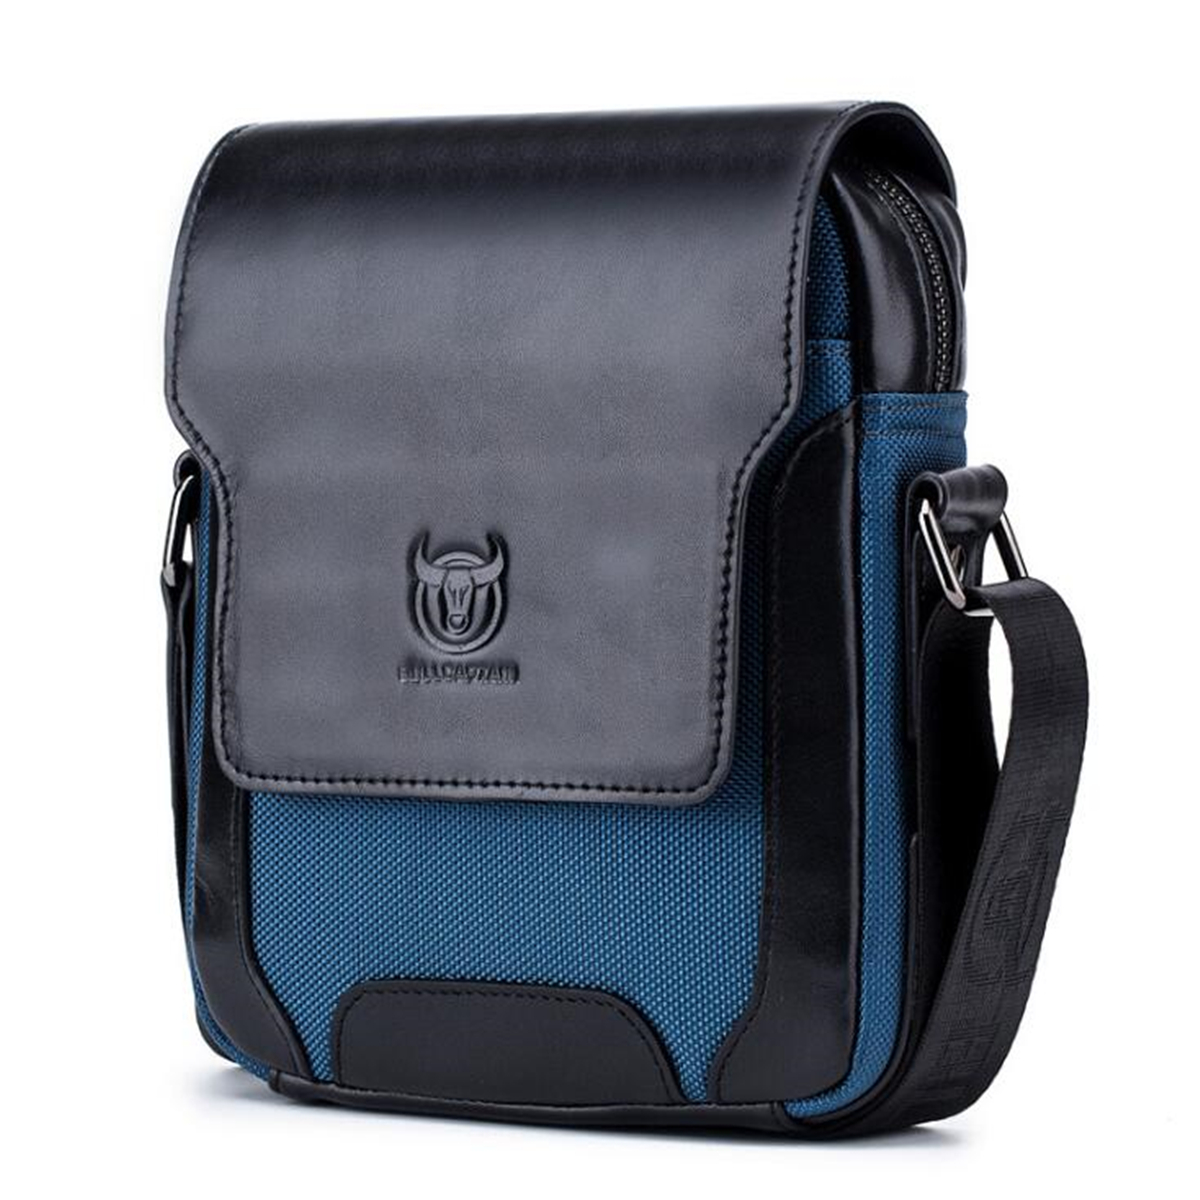 

Outdoor Men Handbag Genuine Leather Bag Business Shoulder Bag Portable Briefcase Messenger Bag